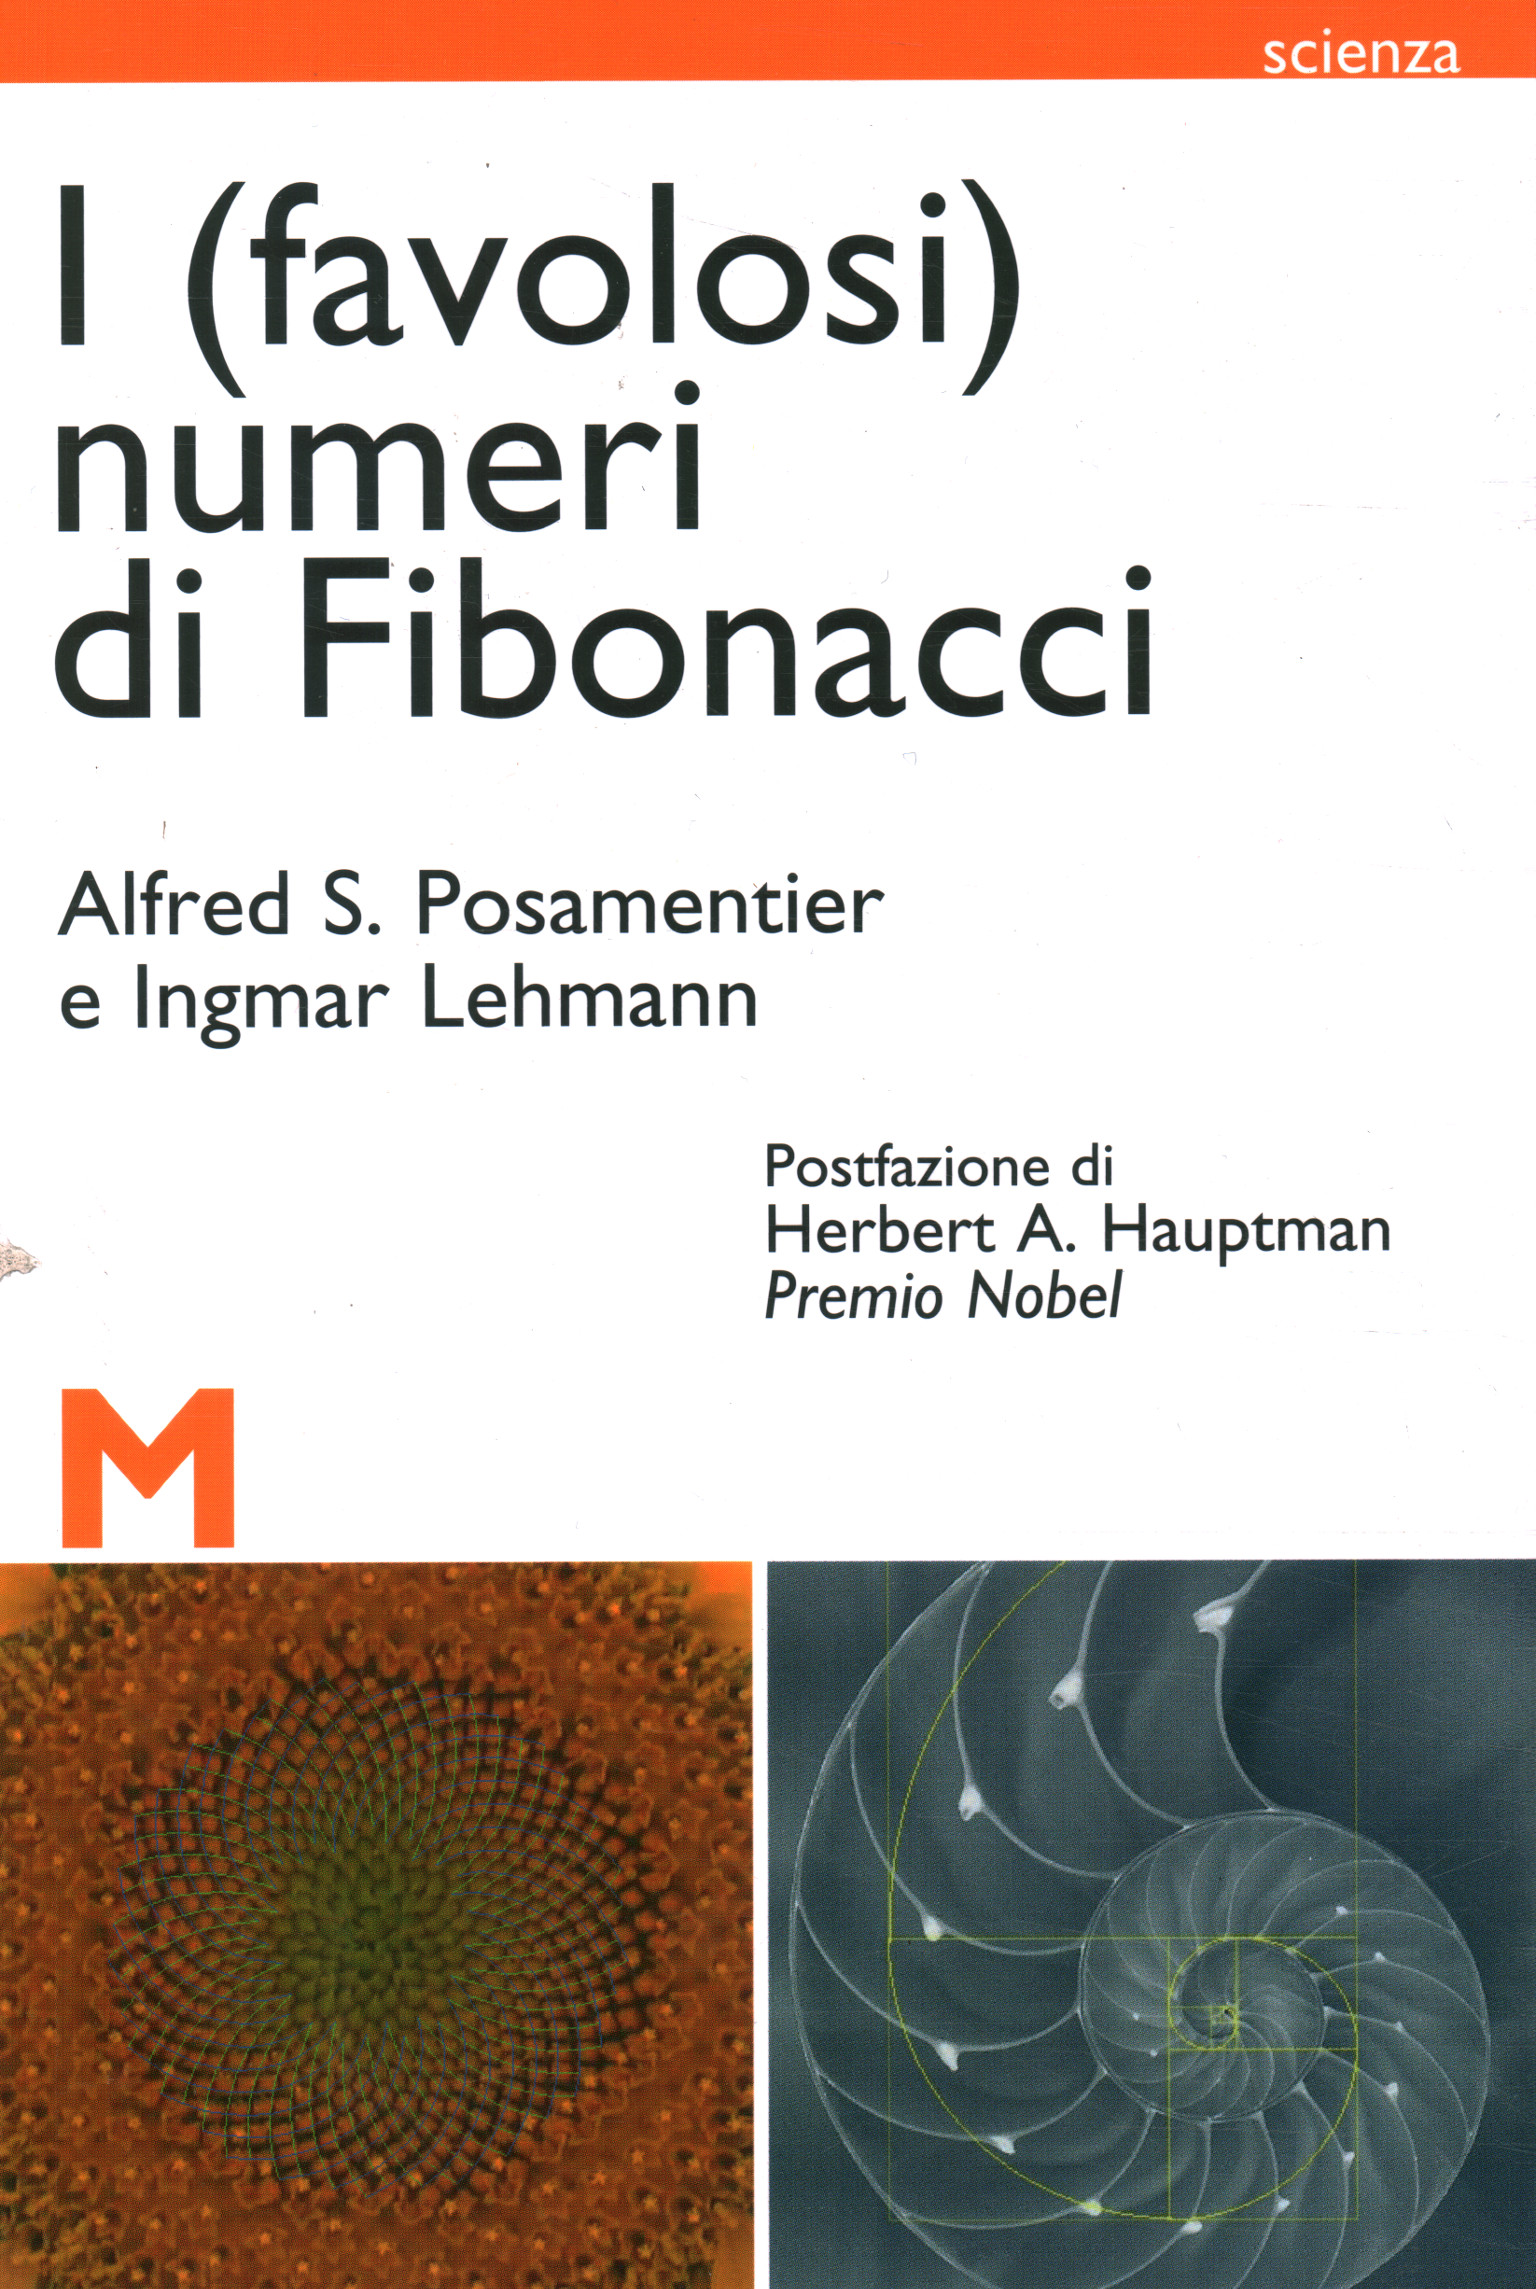 Los (fabulosos) números de Fibonacci